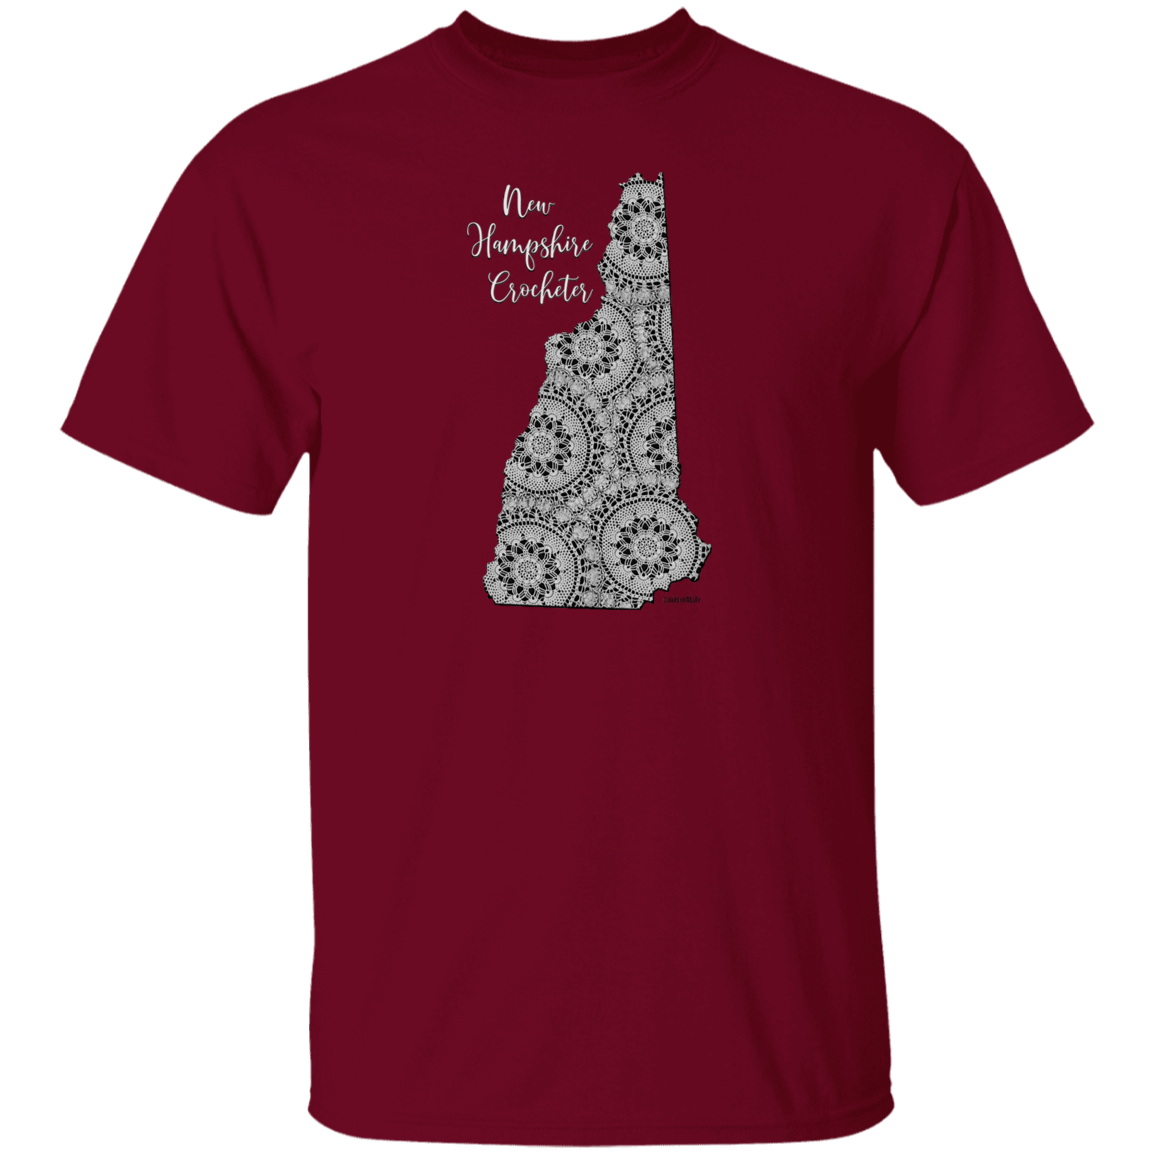 New Hampshire Crocheter T-Shirt